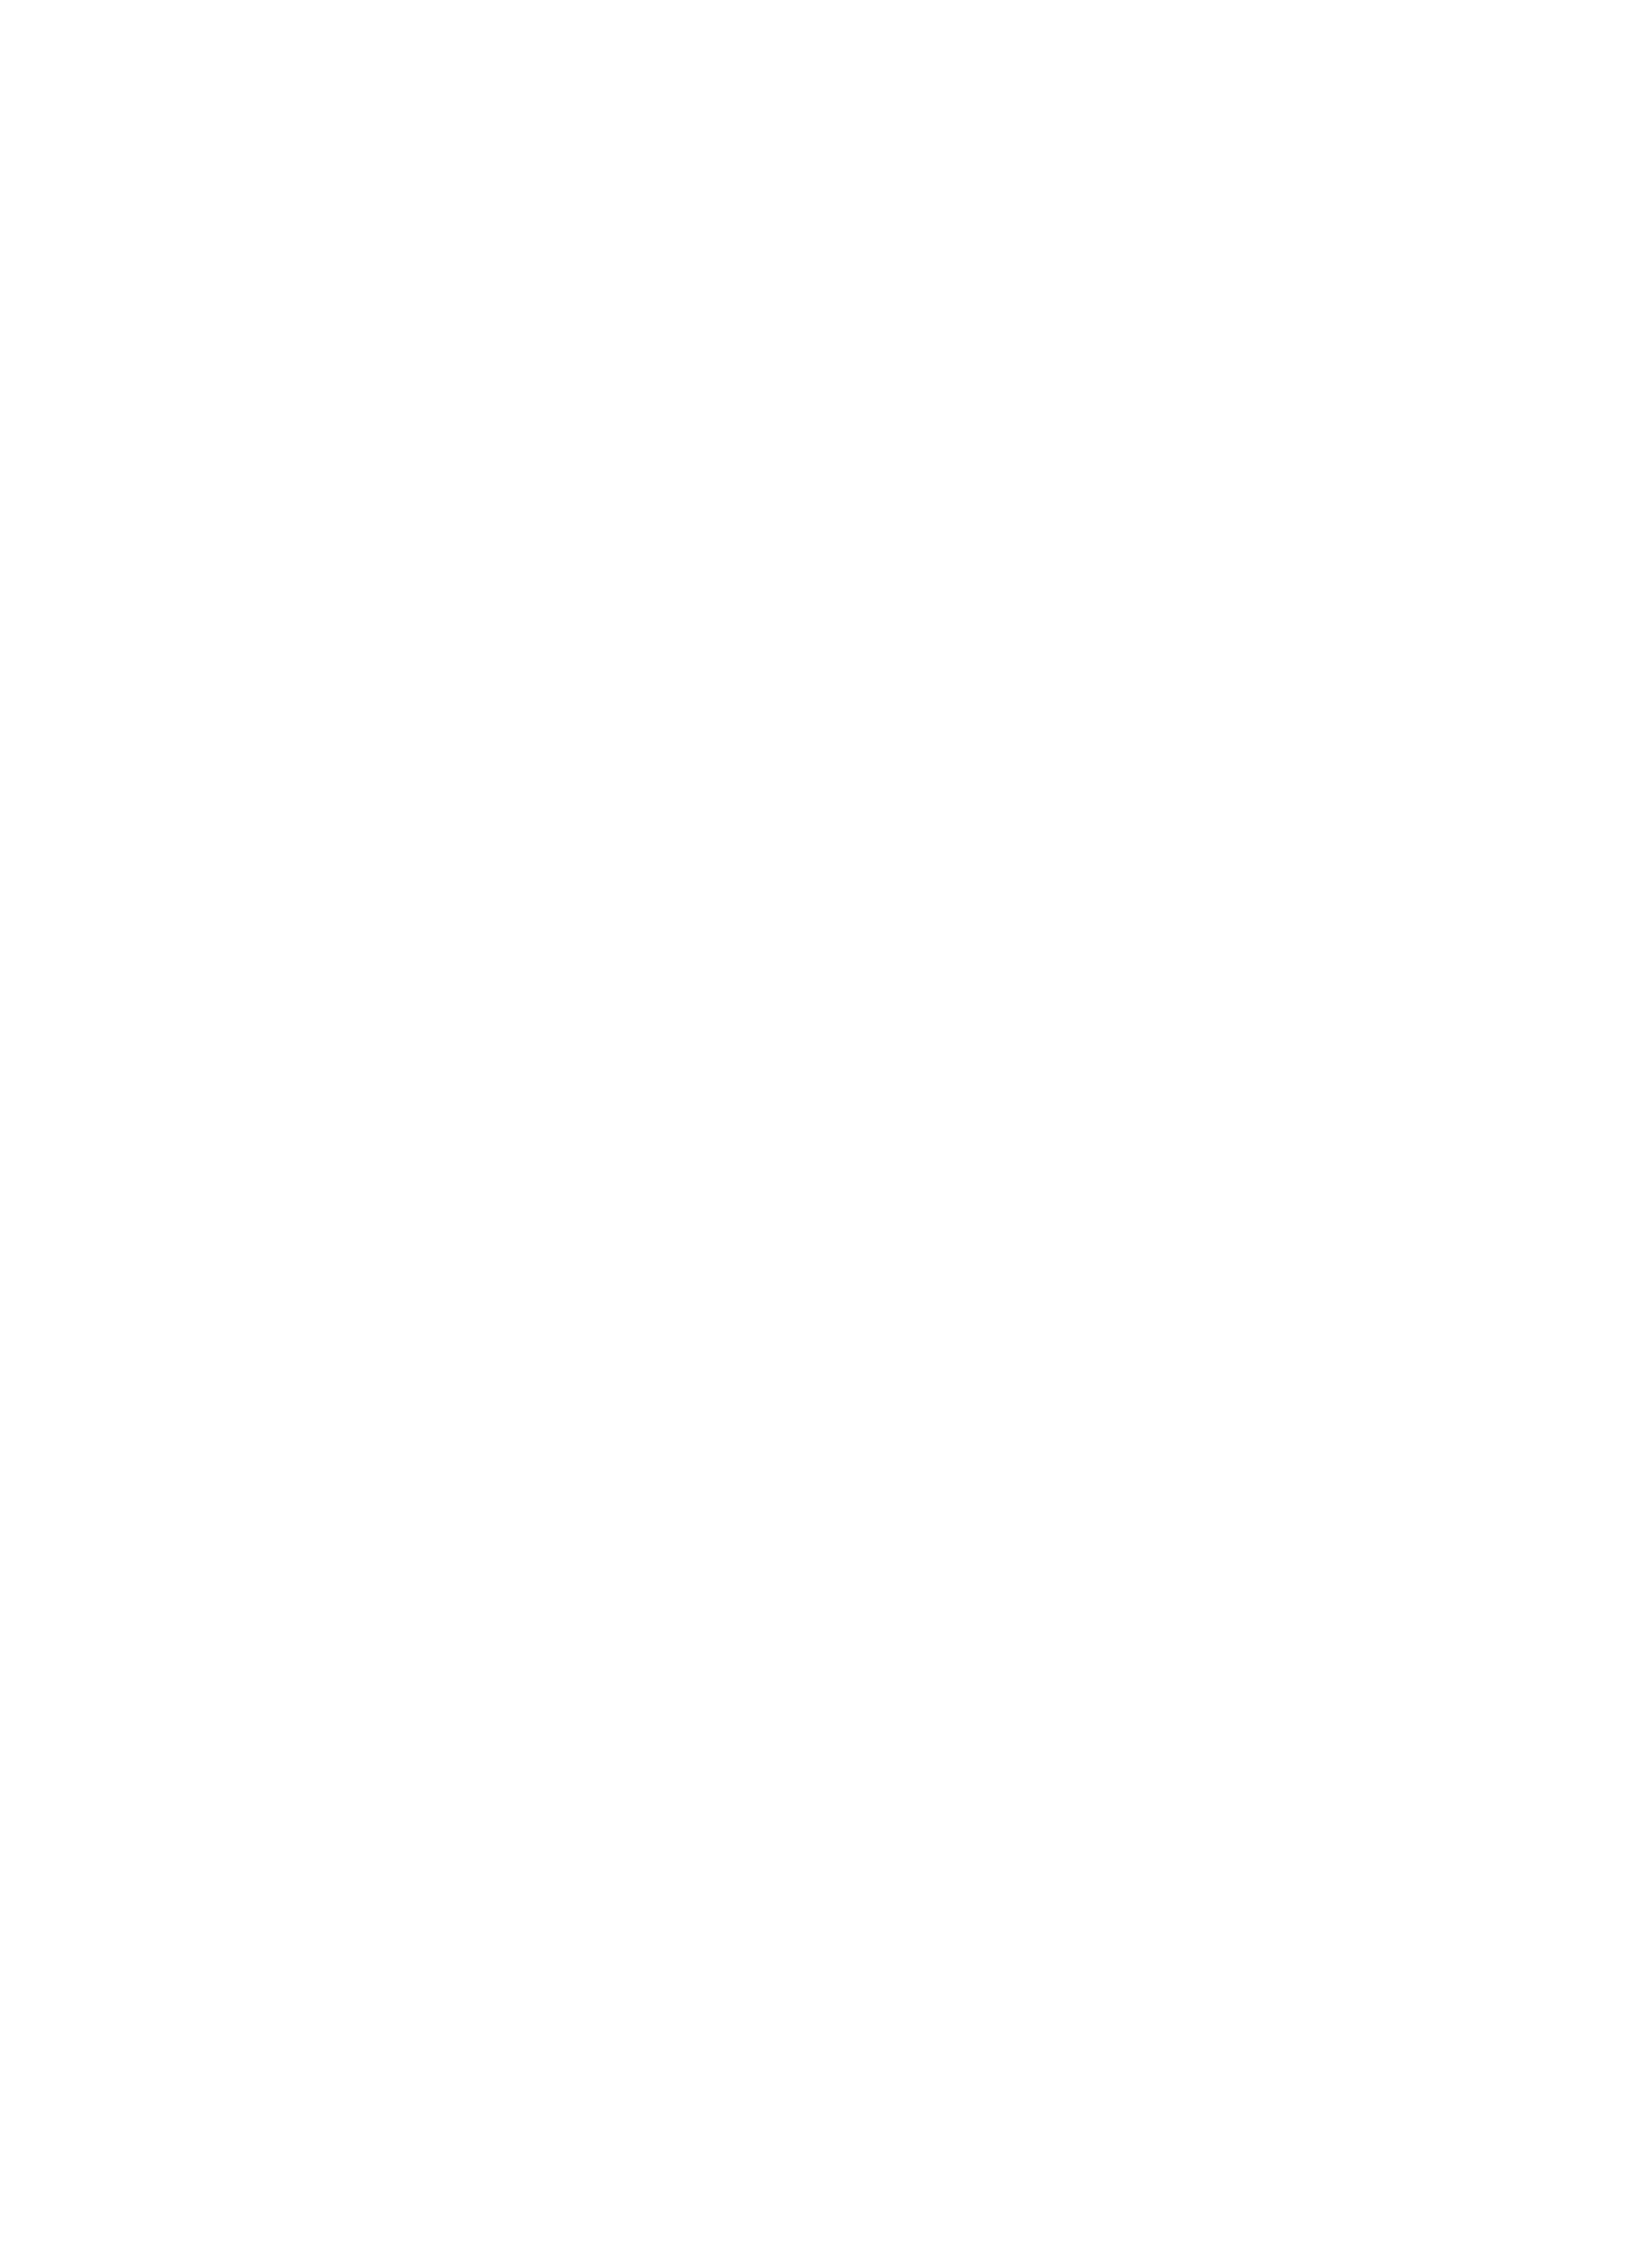 Iglesia Pentecostal Apostolica